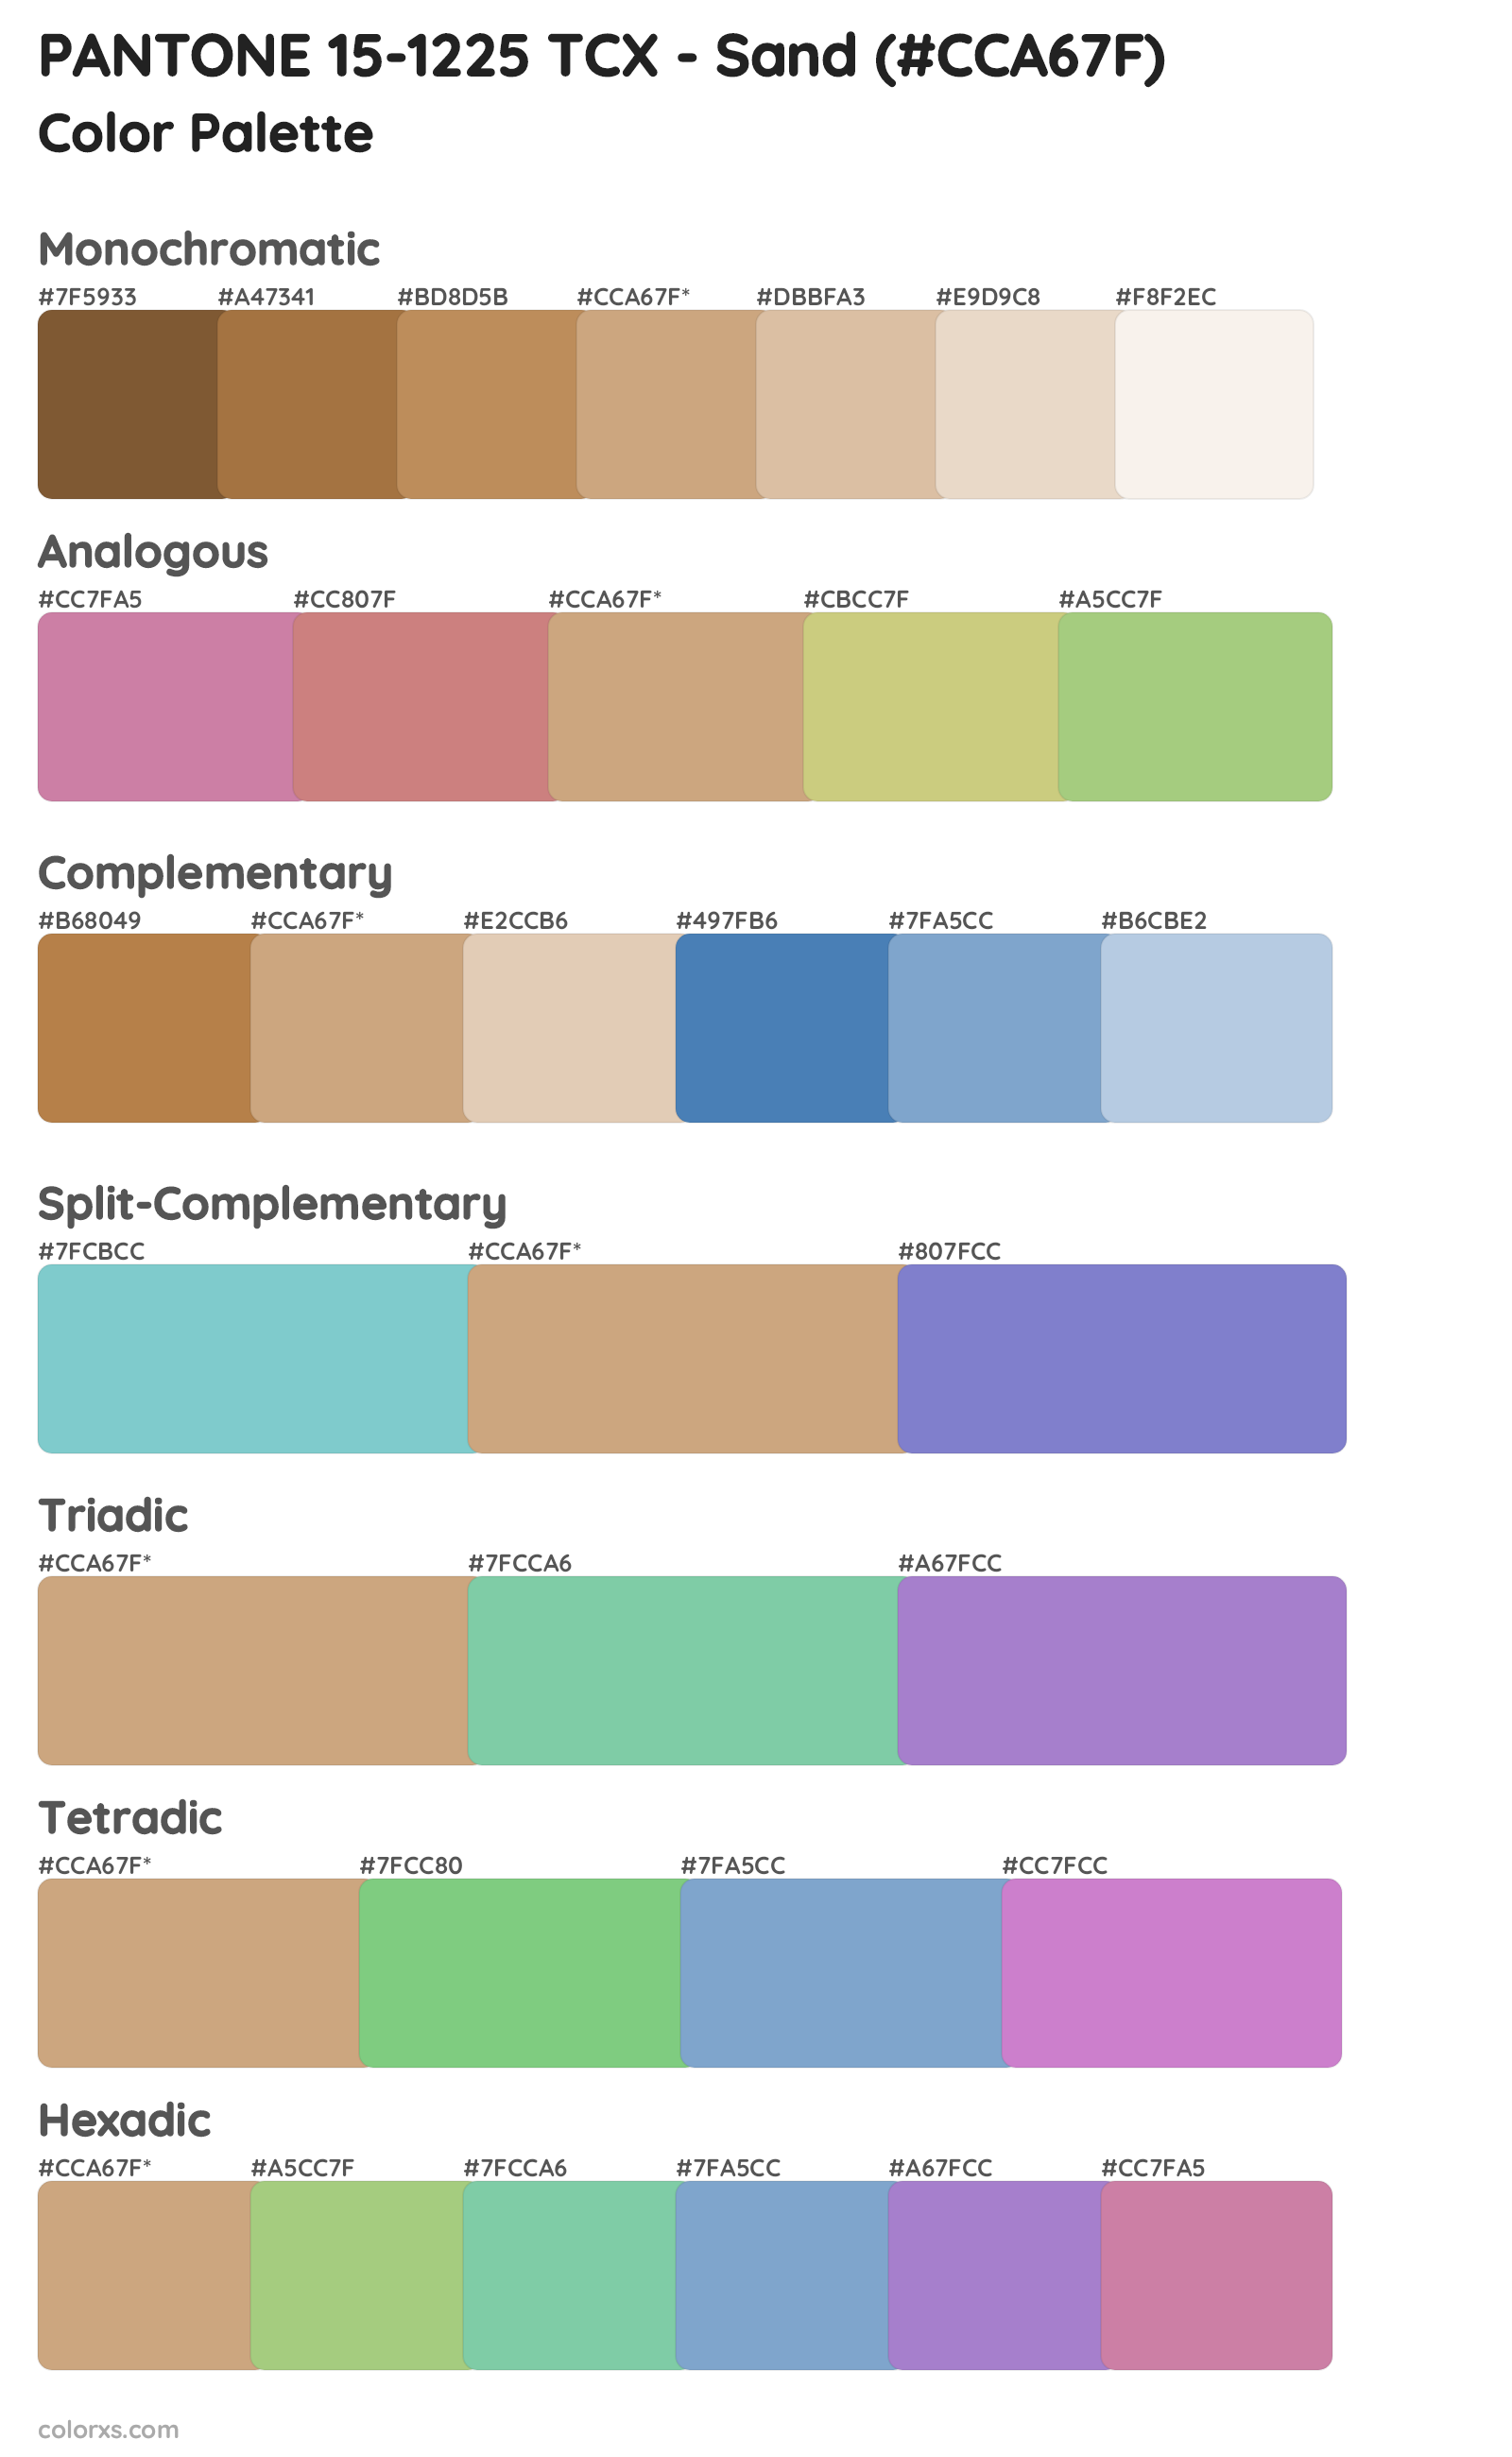 PANTONE 15-1225 TCX - Sand Color Scheme Palettes